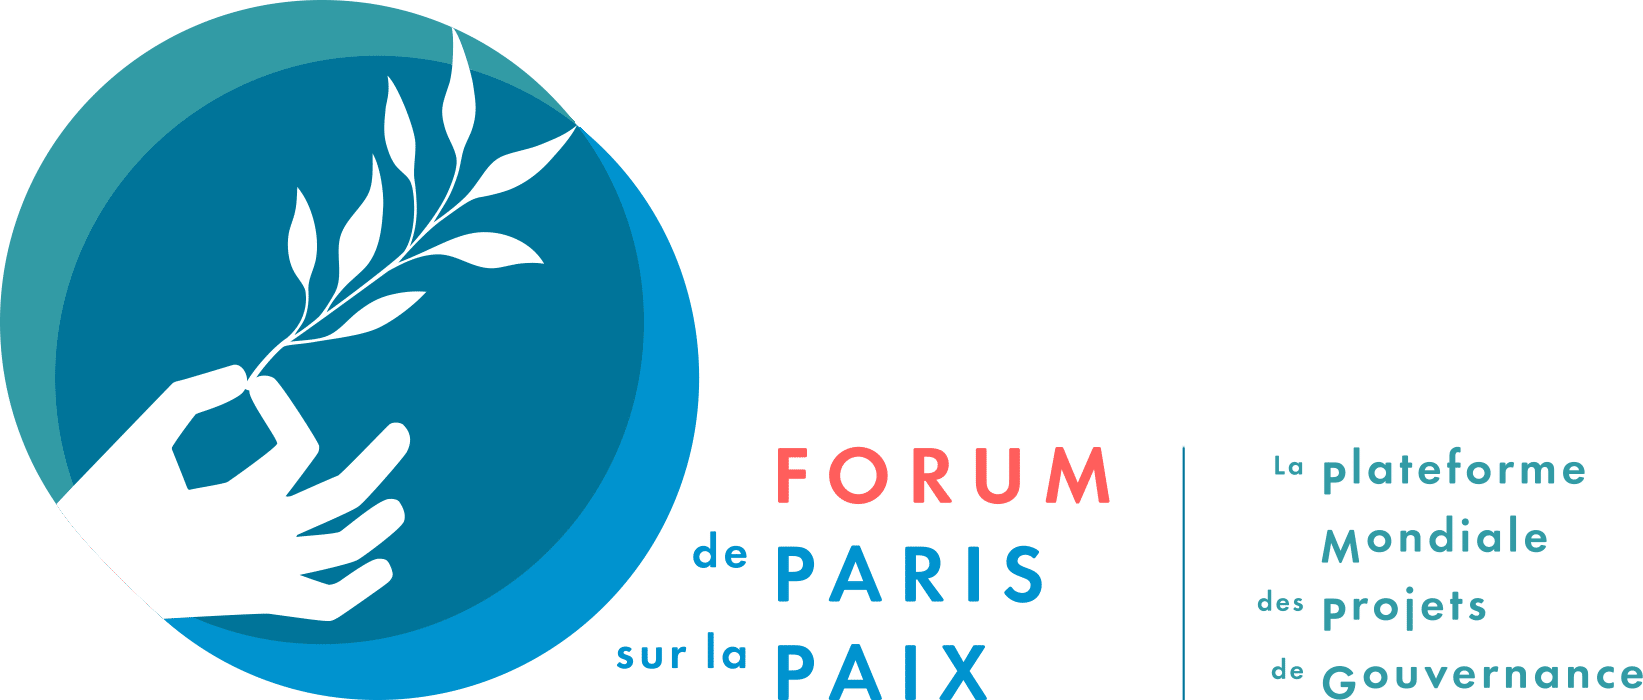 forum de paris sur la paix - agence coriolink - synopia lauréat